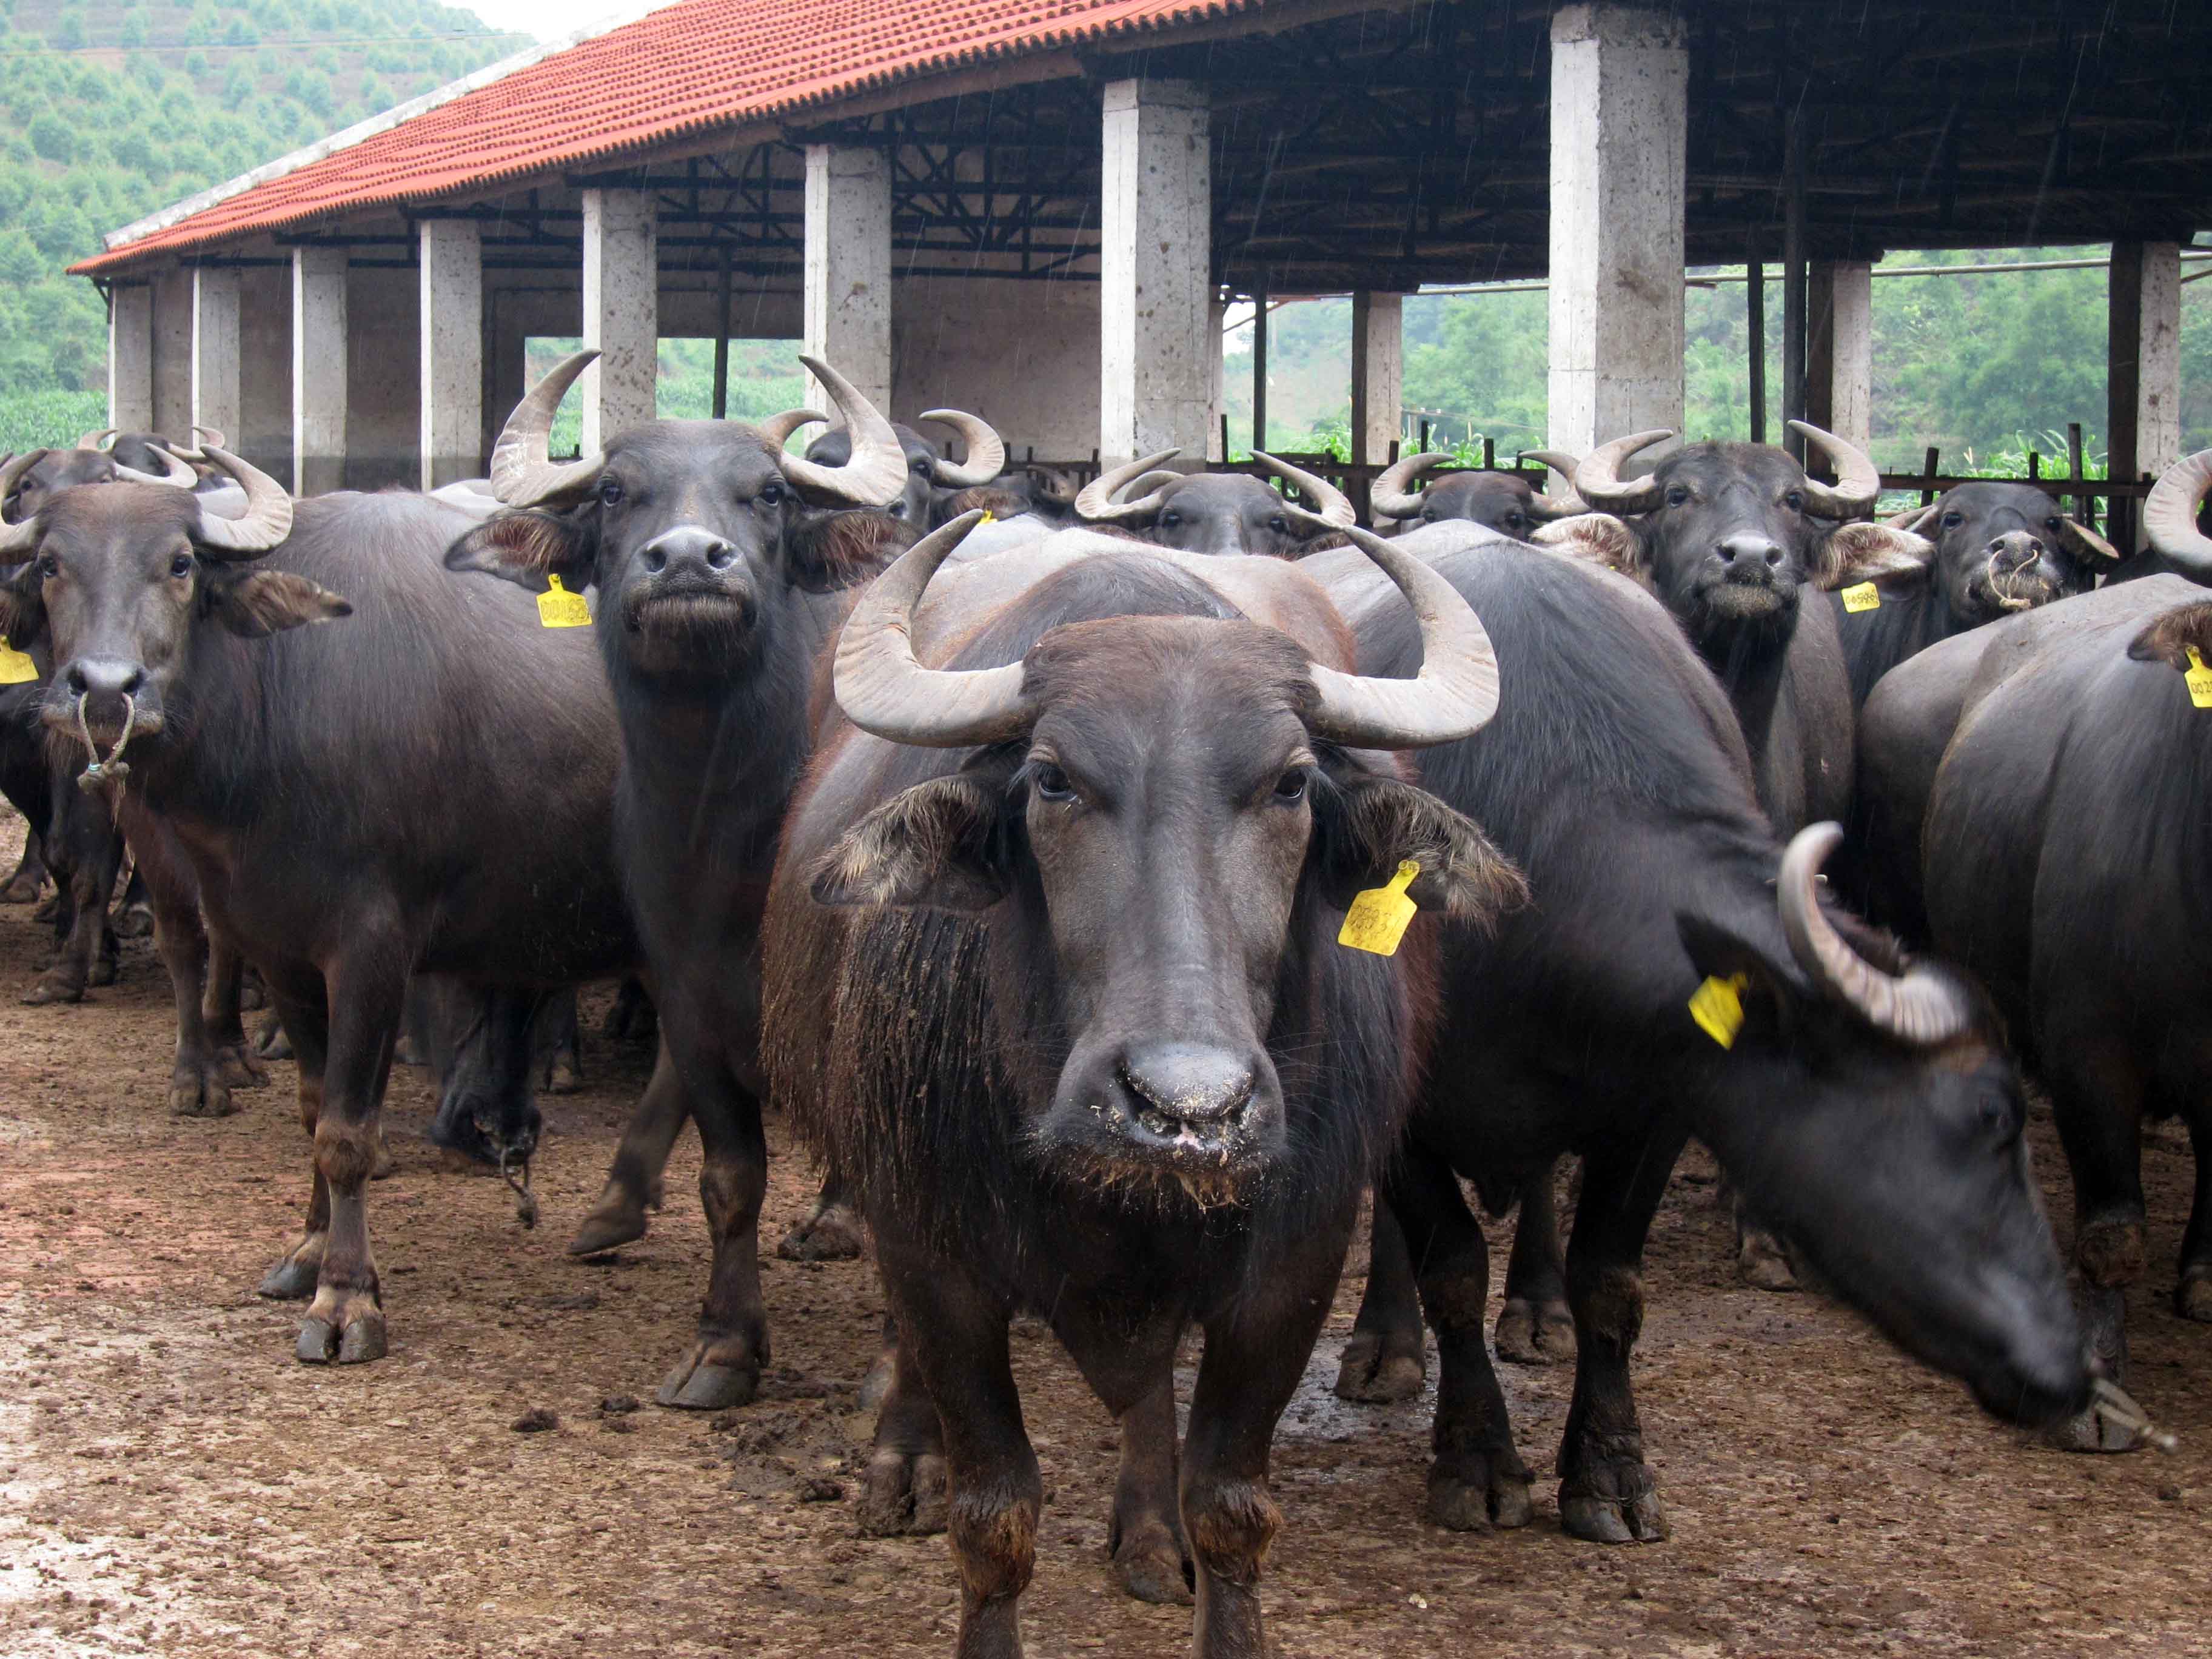 广西钦州:减税降费让奶水牛产业"牛"起来